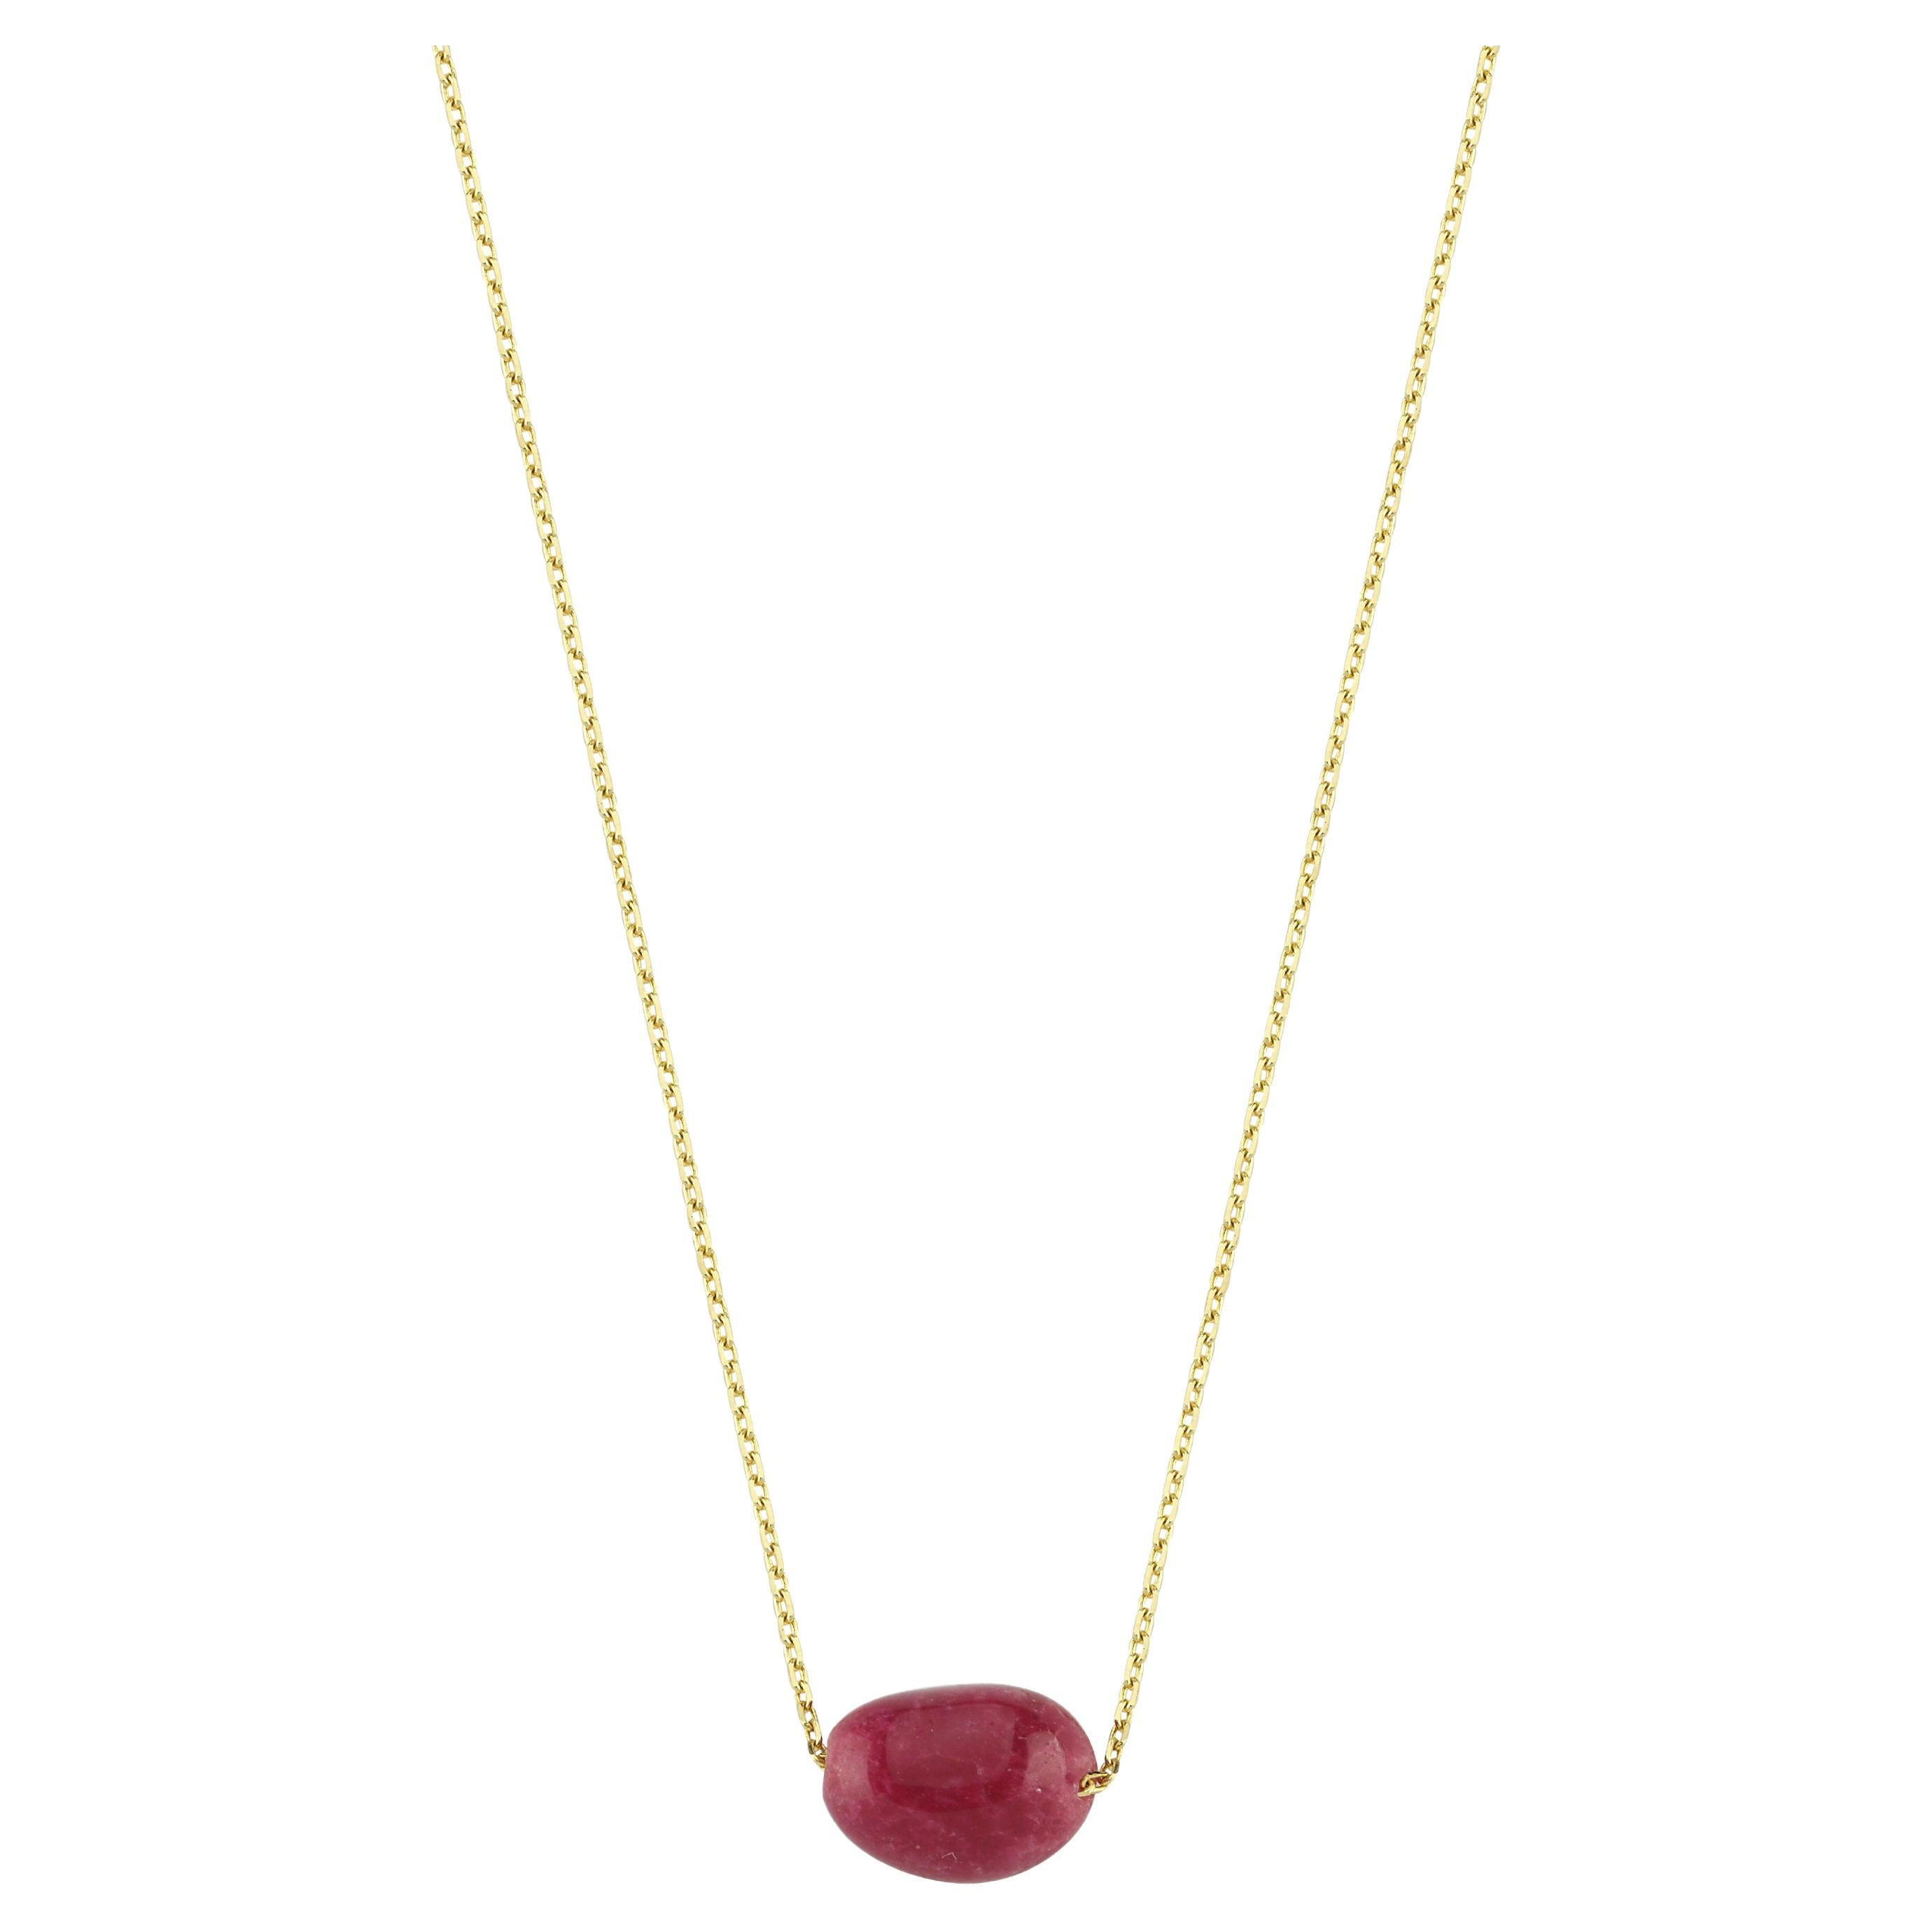 Collier en or 14k avec perles de rubis racine